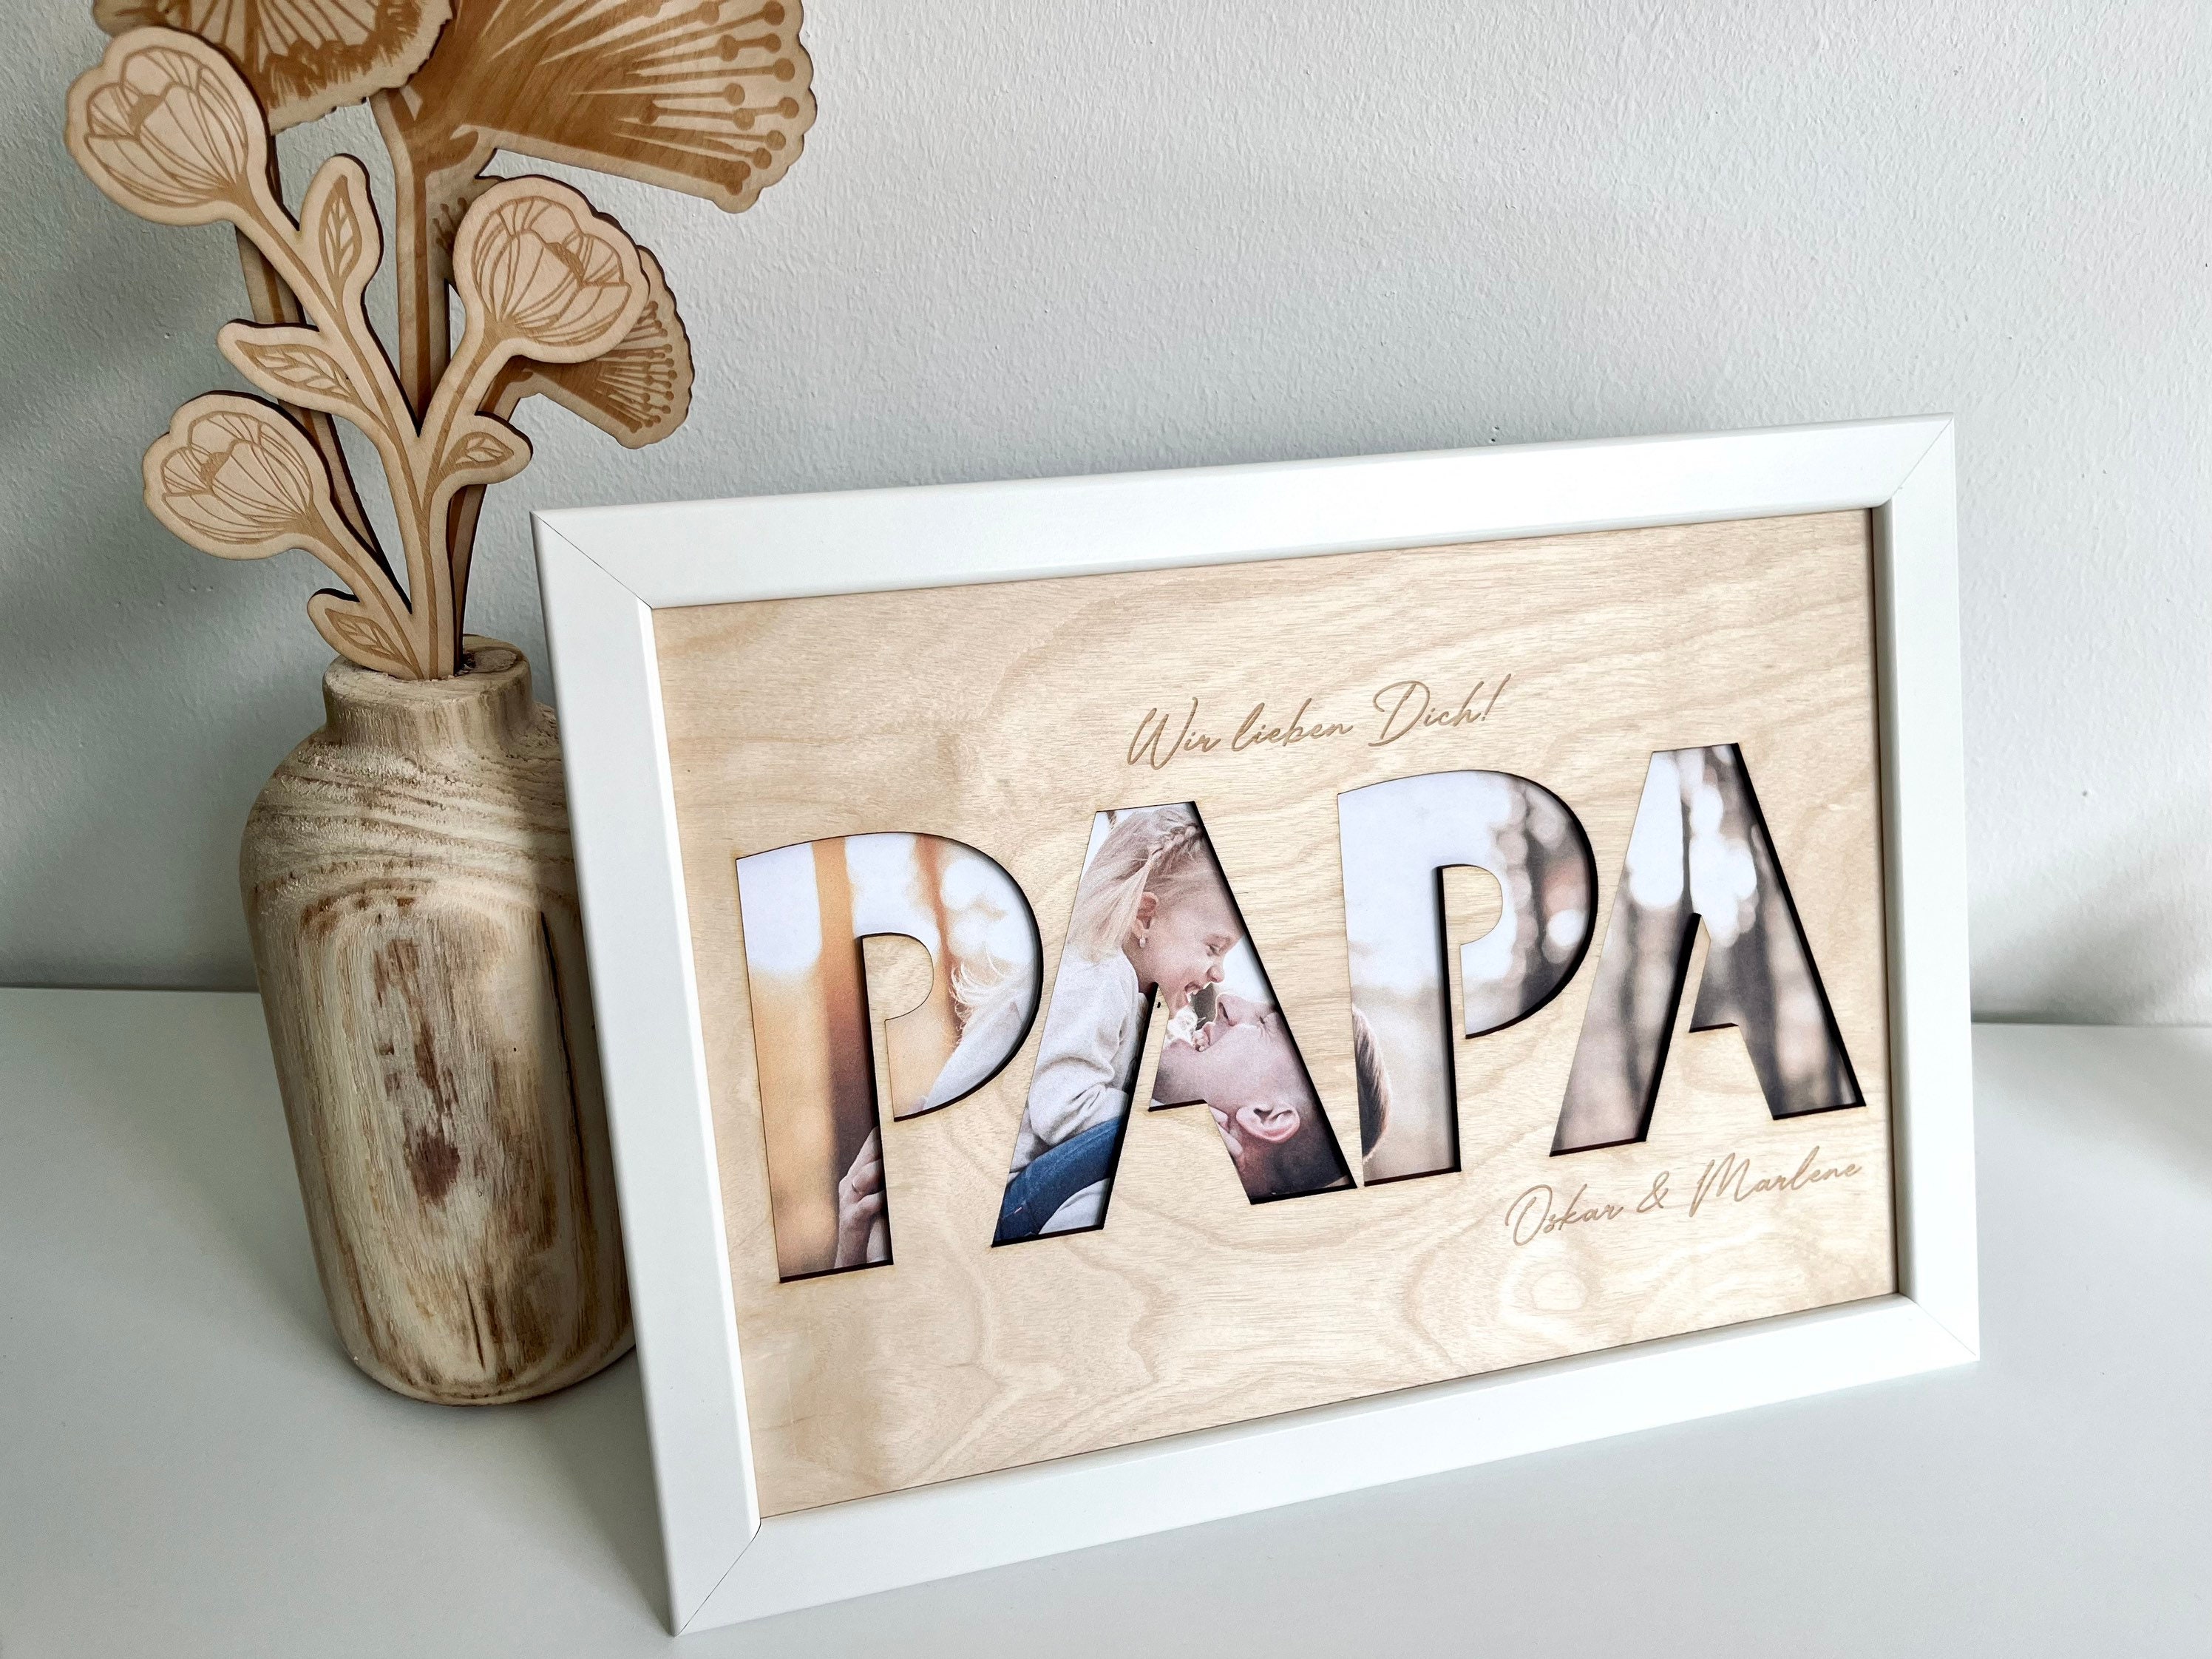 FHzytg Bilderrahmen 10x15cm Geschenk für Papa, Holz Drehbare